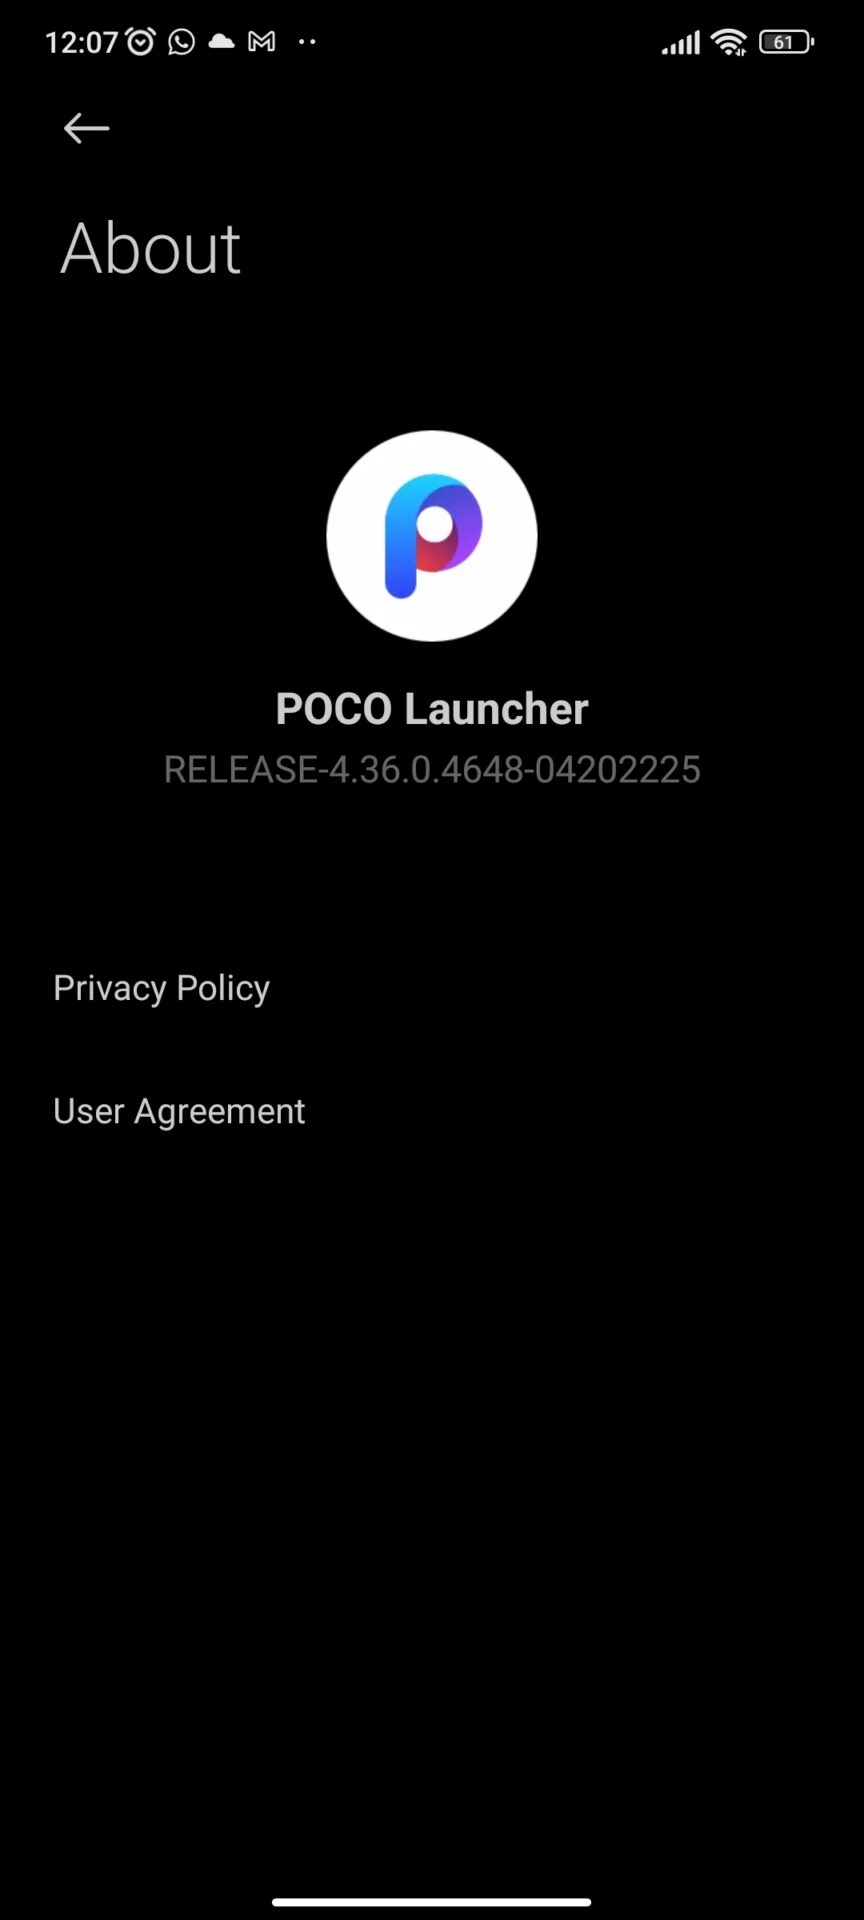 POCO Launcher Version